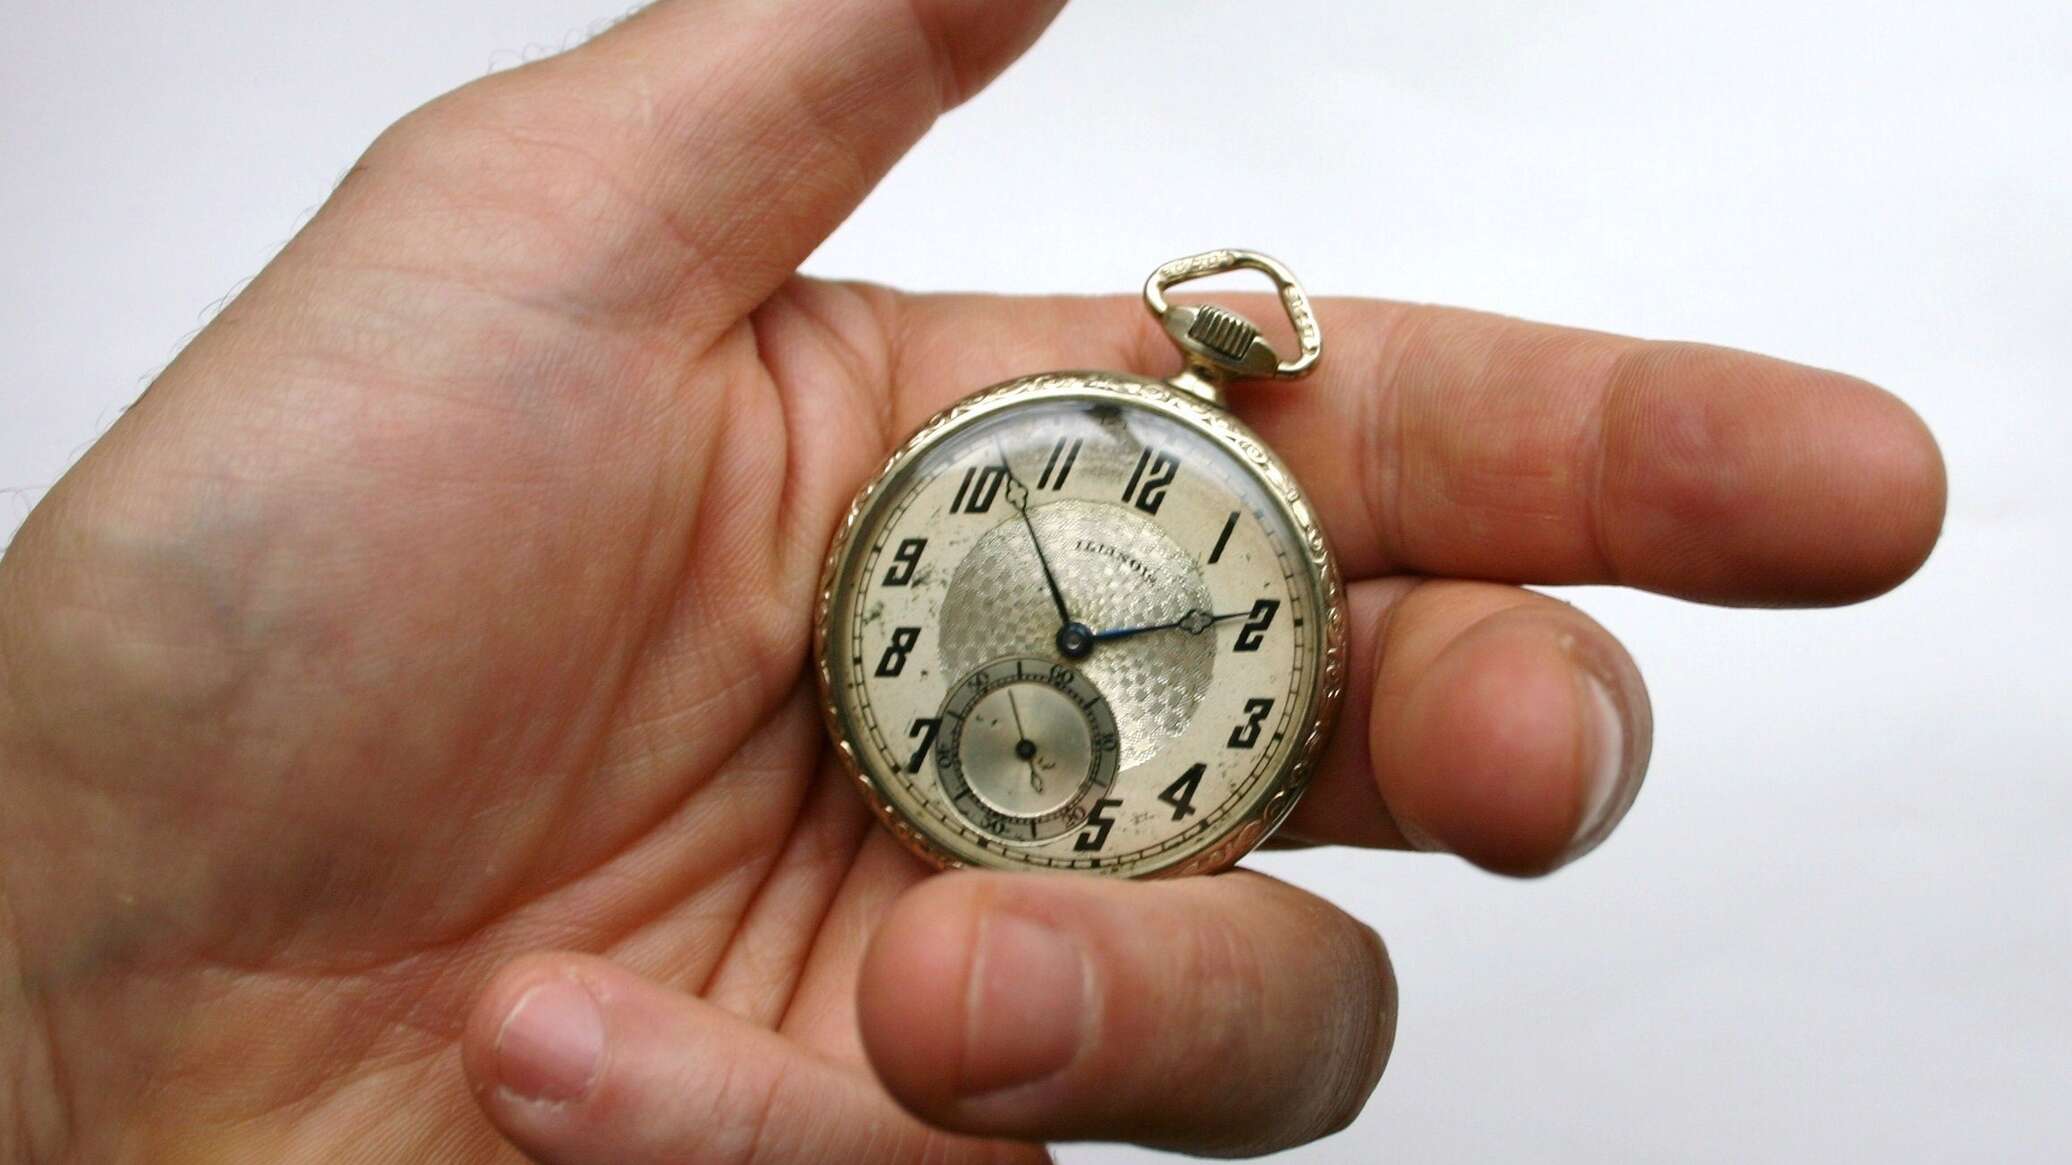 Рука держащая часы. Часы на руке. Карманные часы в руке. Старинные часы в руке. Часы на ладони.